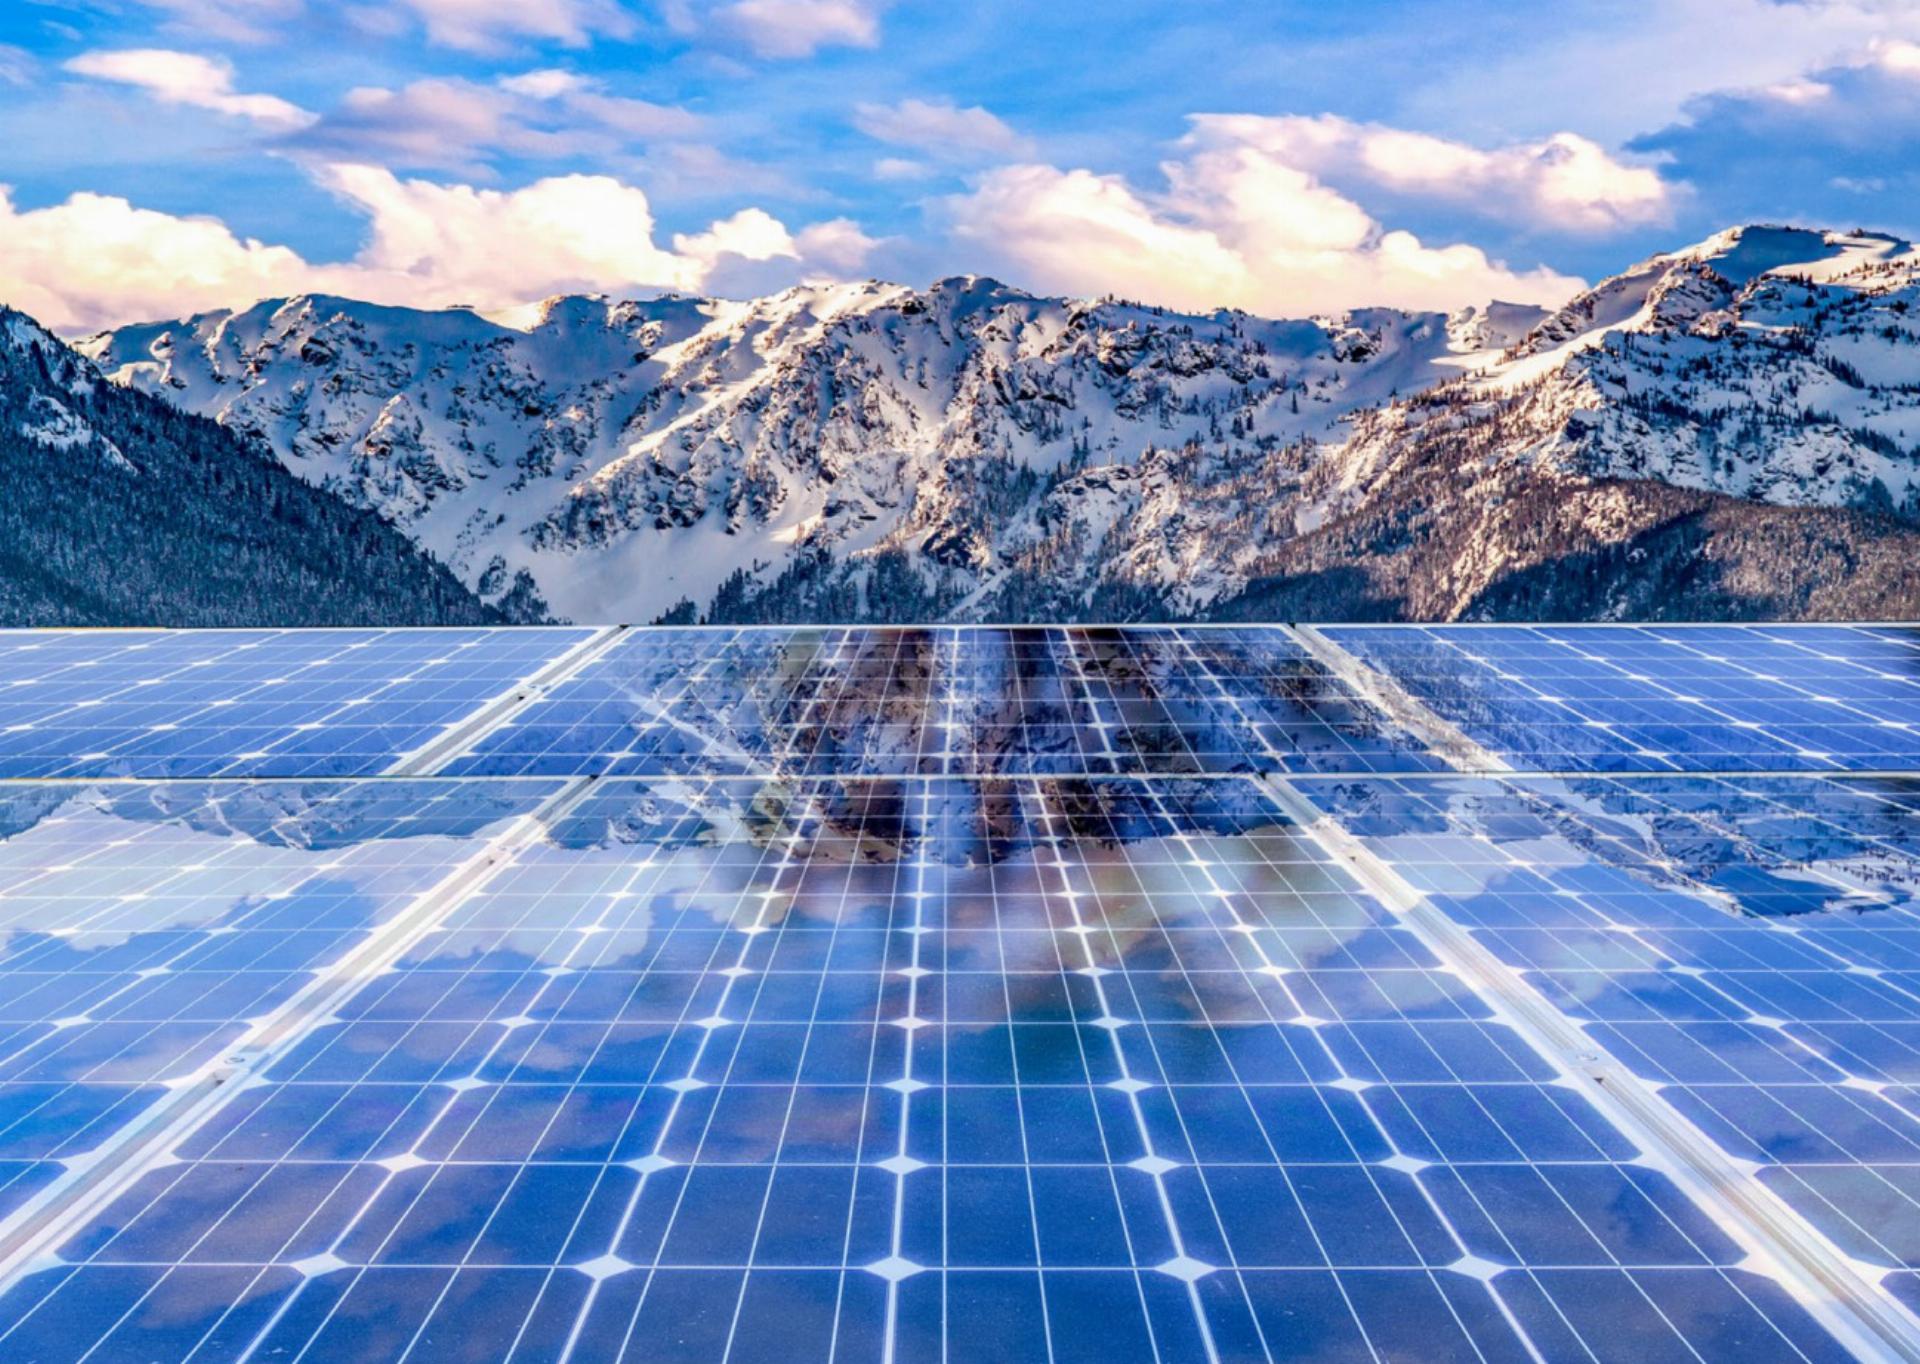 Im Eiltempo ermöglichte das Parlament den Bau grösserer Photovoltaikanlagen im Berggebiet. Der Verein Pro Natura Berner Oberland beäugt diesen Schritt kritisch. SYMBOLBILD: CK / STOCK.ADOBE.COM